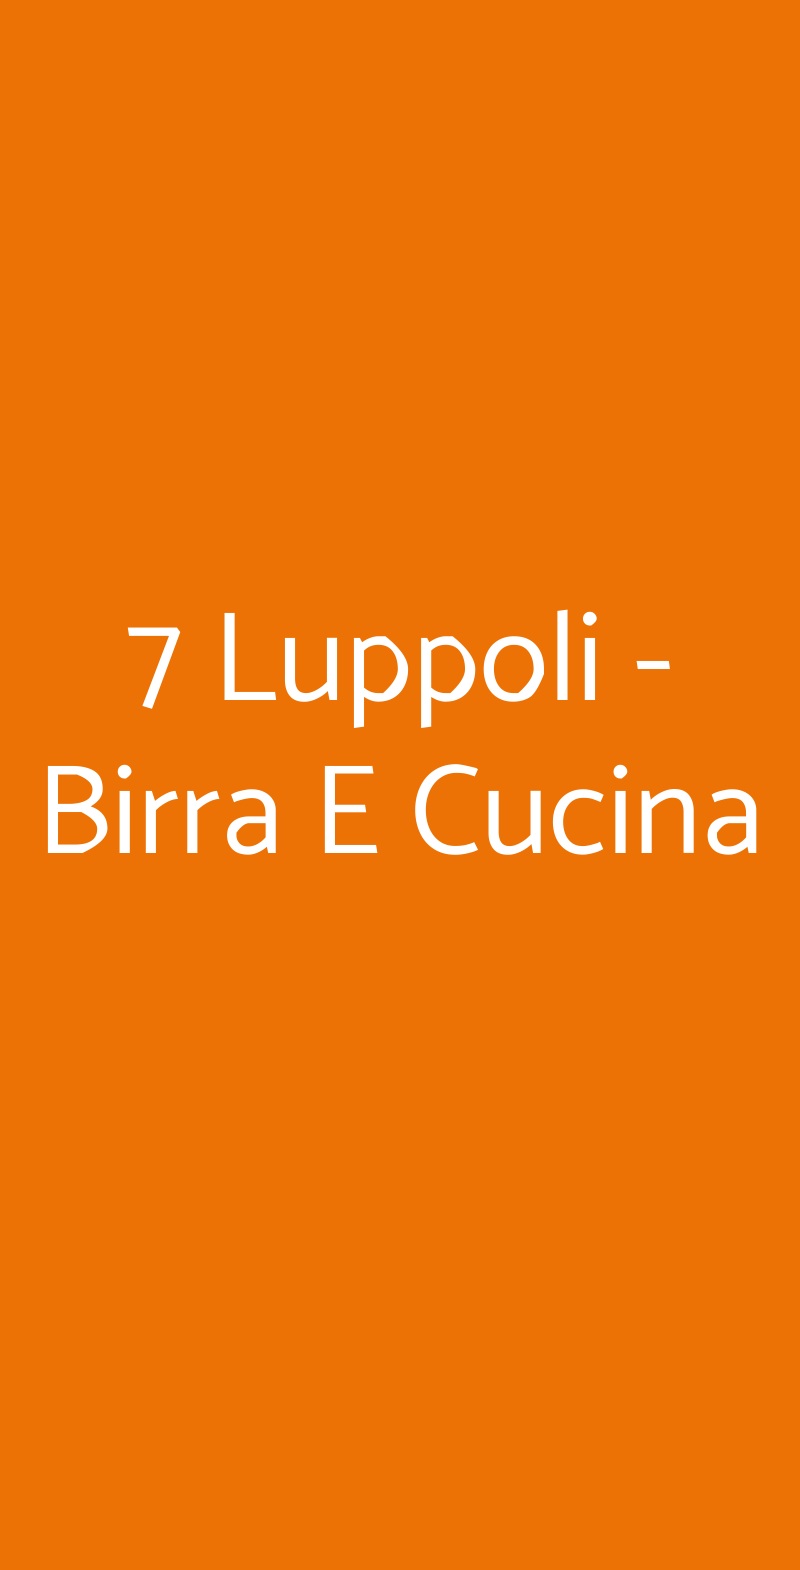 7 Luppoli - Birra E Cucina Milano menù 1 pagina